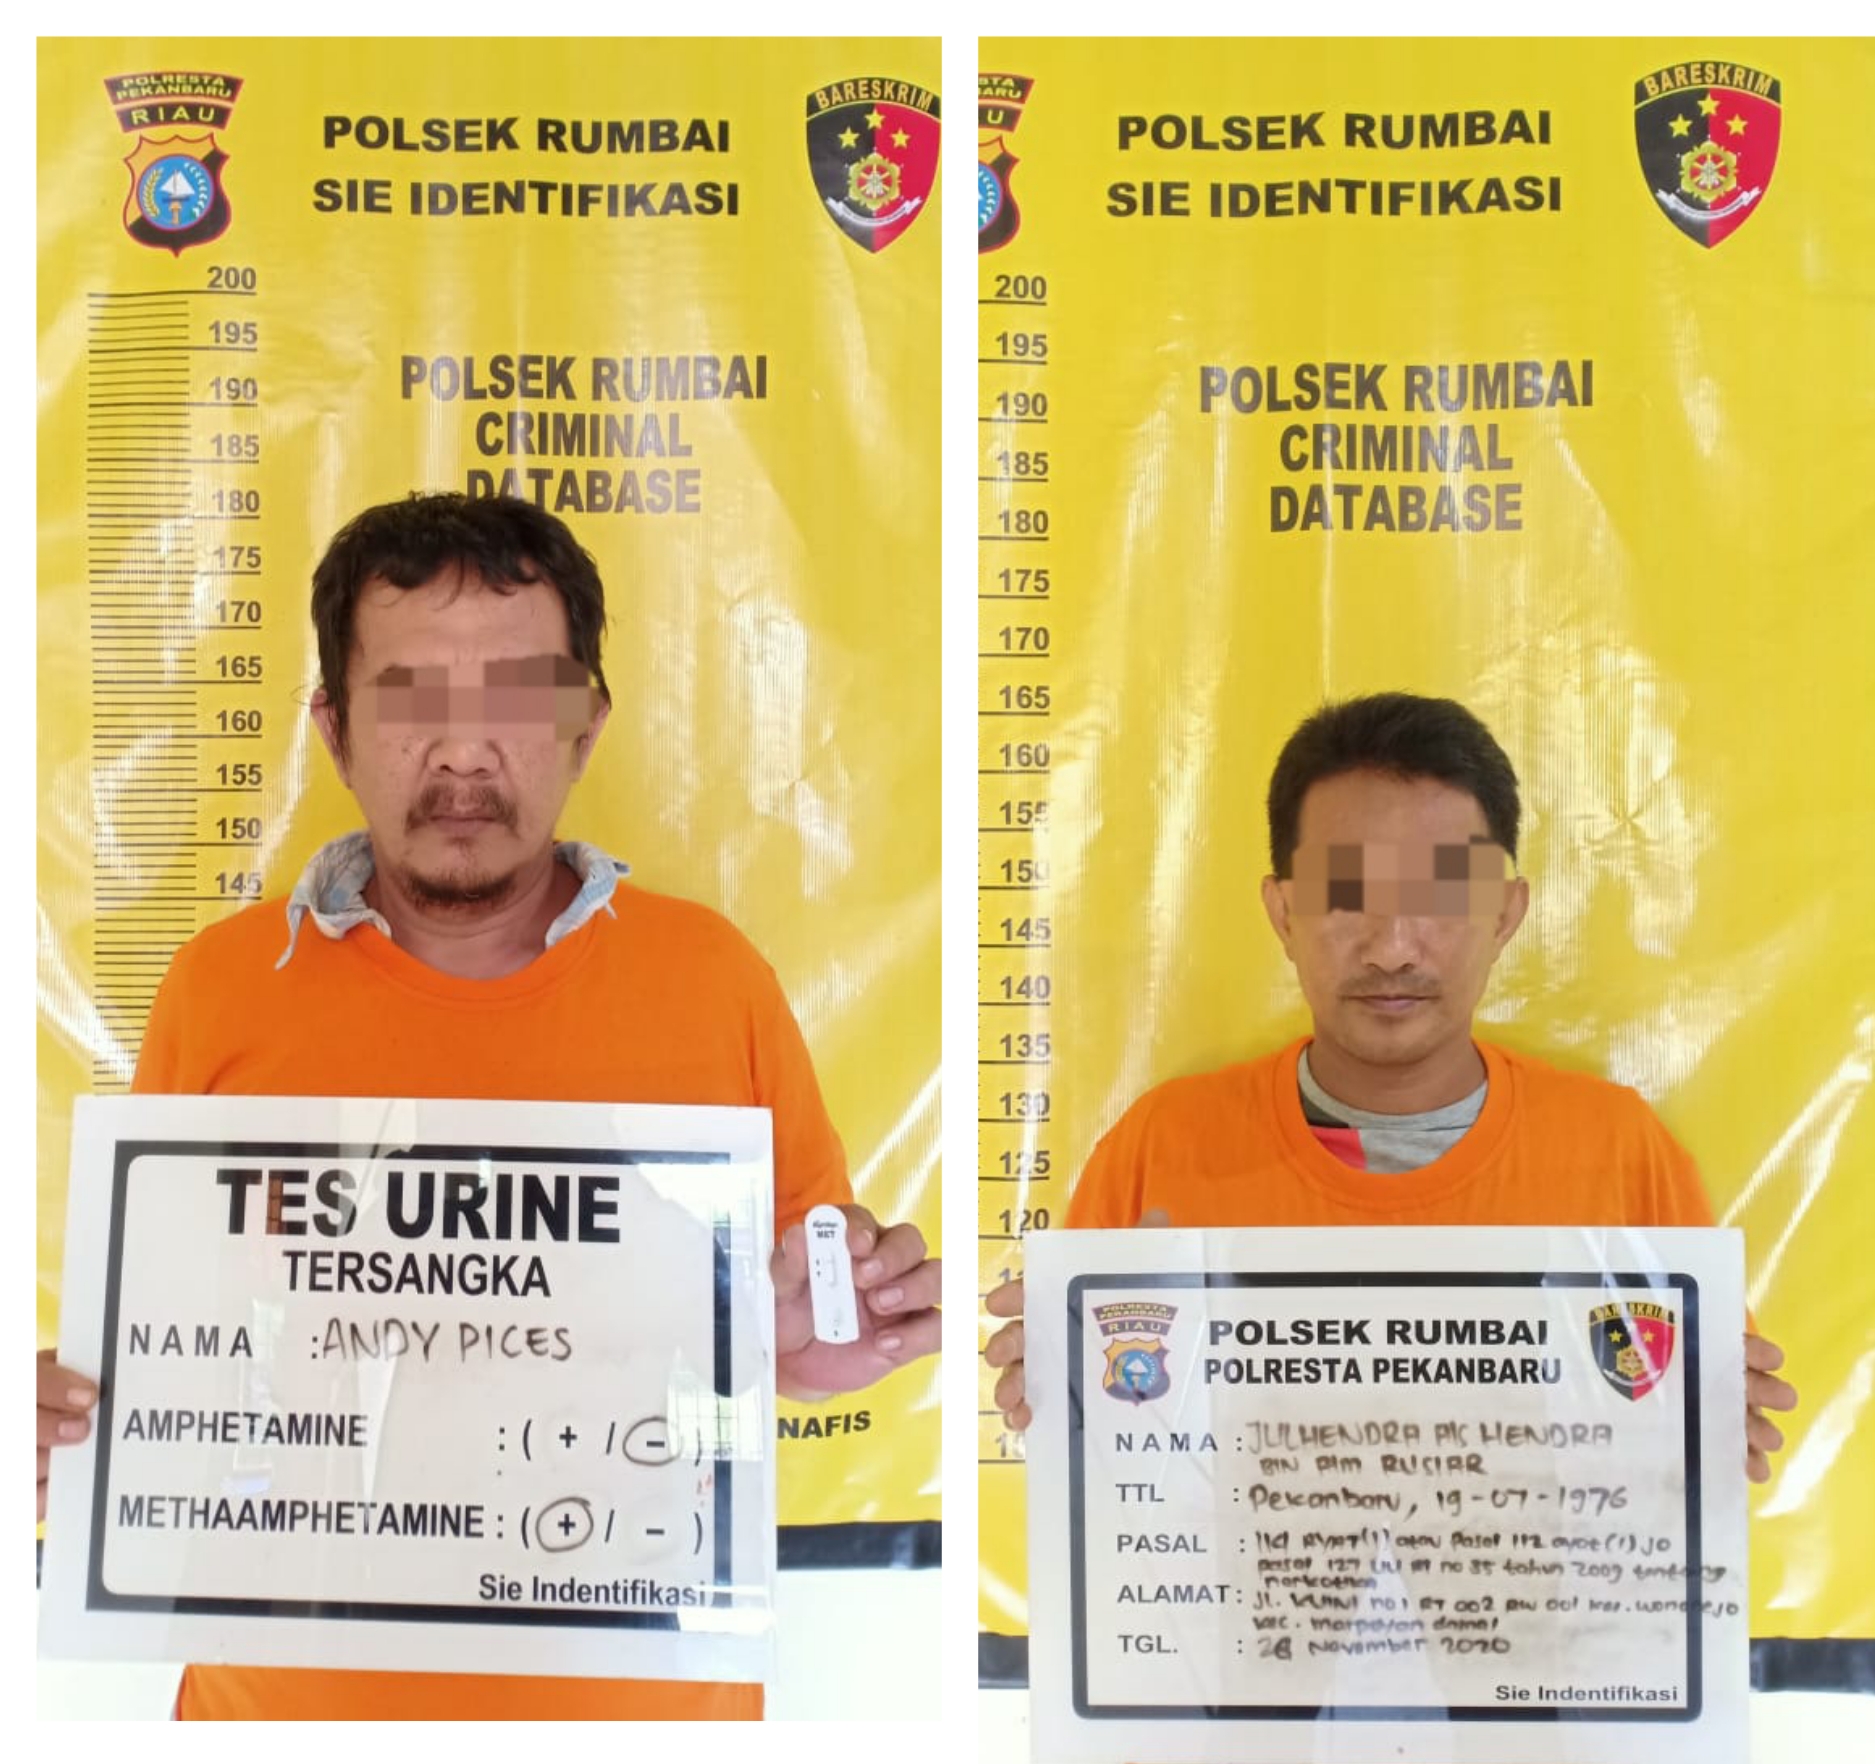 Transaksi di Ruko Jalan Paus Pekanbaru, 2 Pemakai Sabu-sabu Dibekuk Polisi